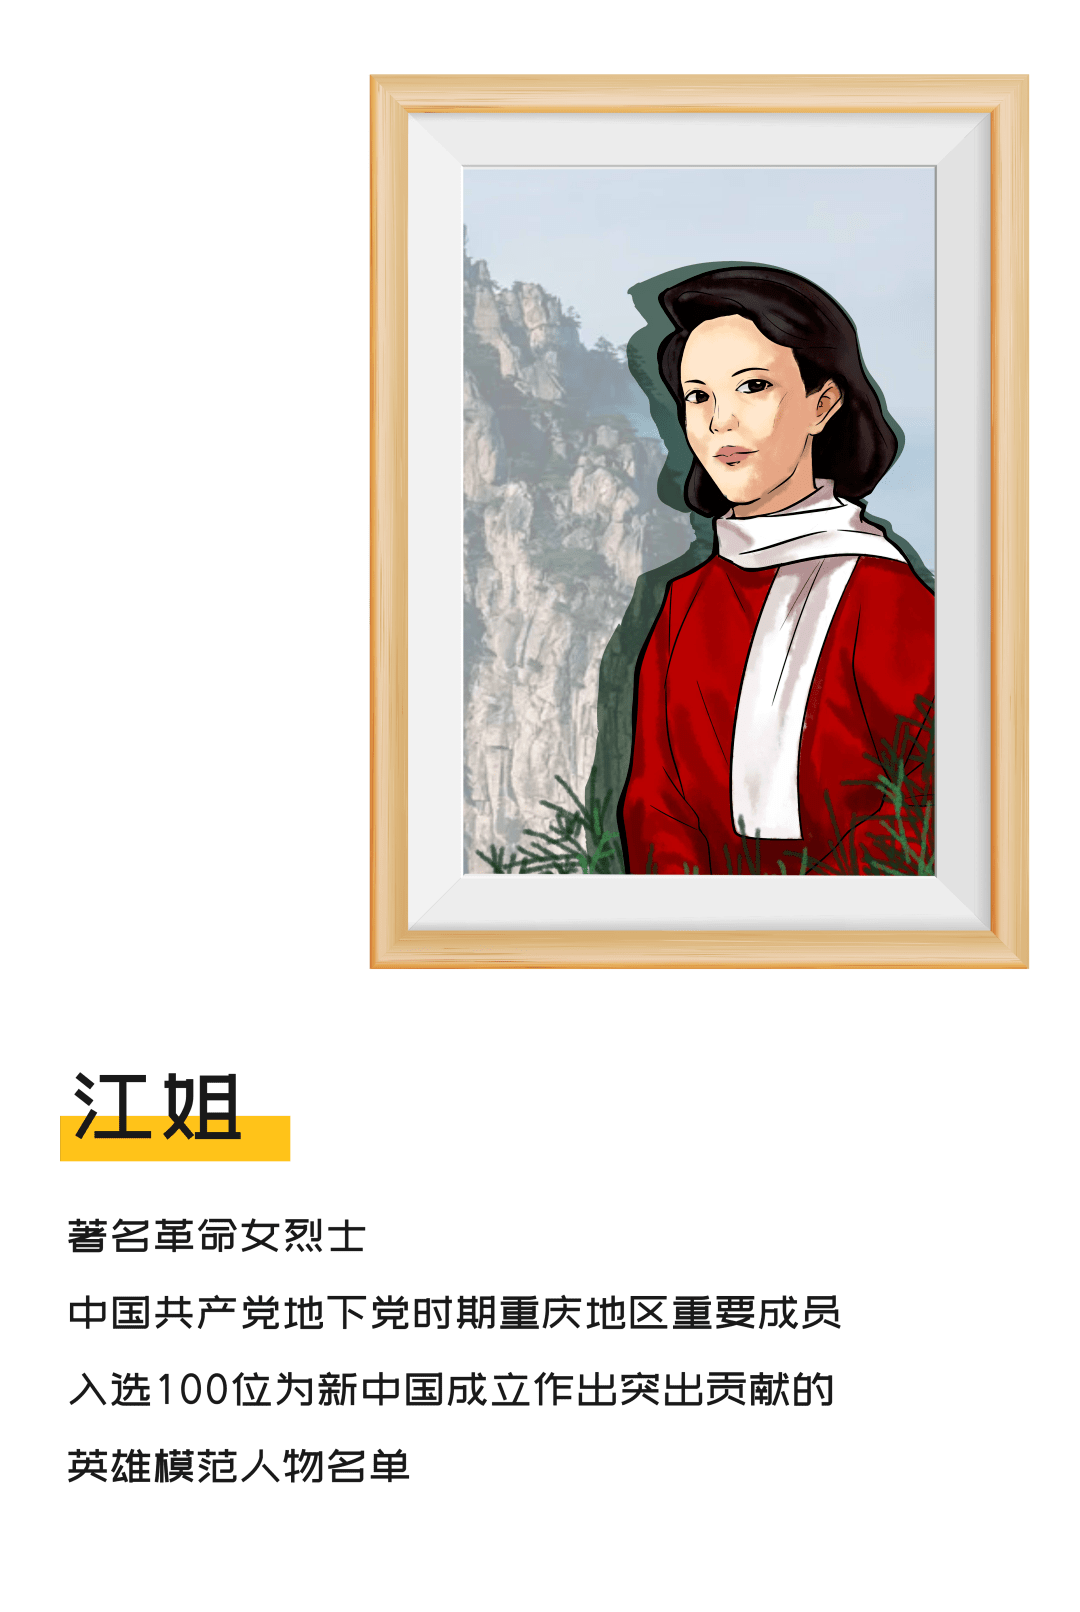 江姐为自己的偶像华坪女高校长张桂梅第二展厅·如愿一步一步实现了